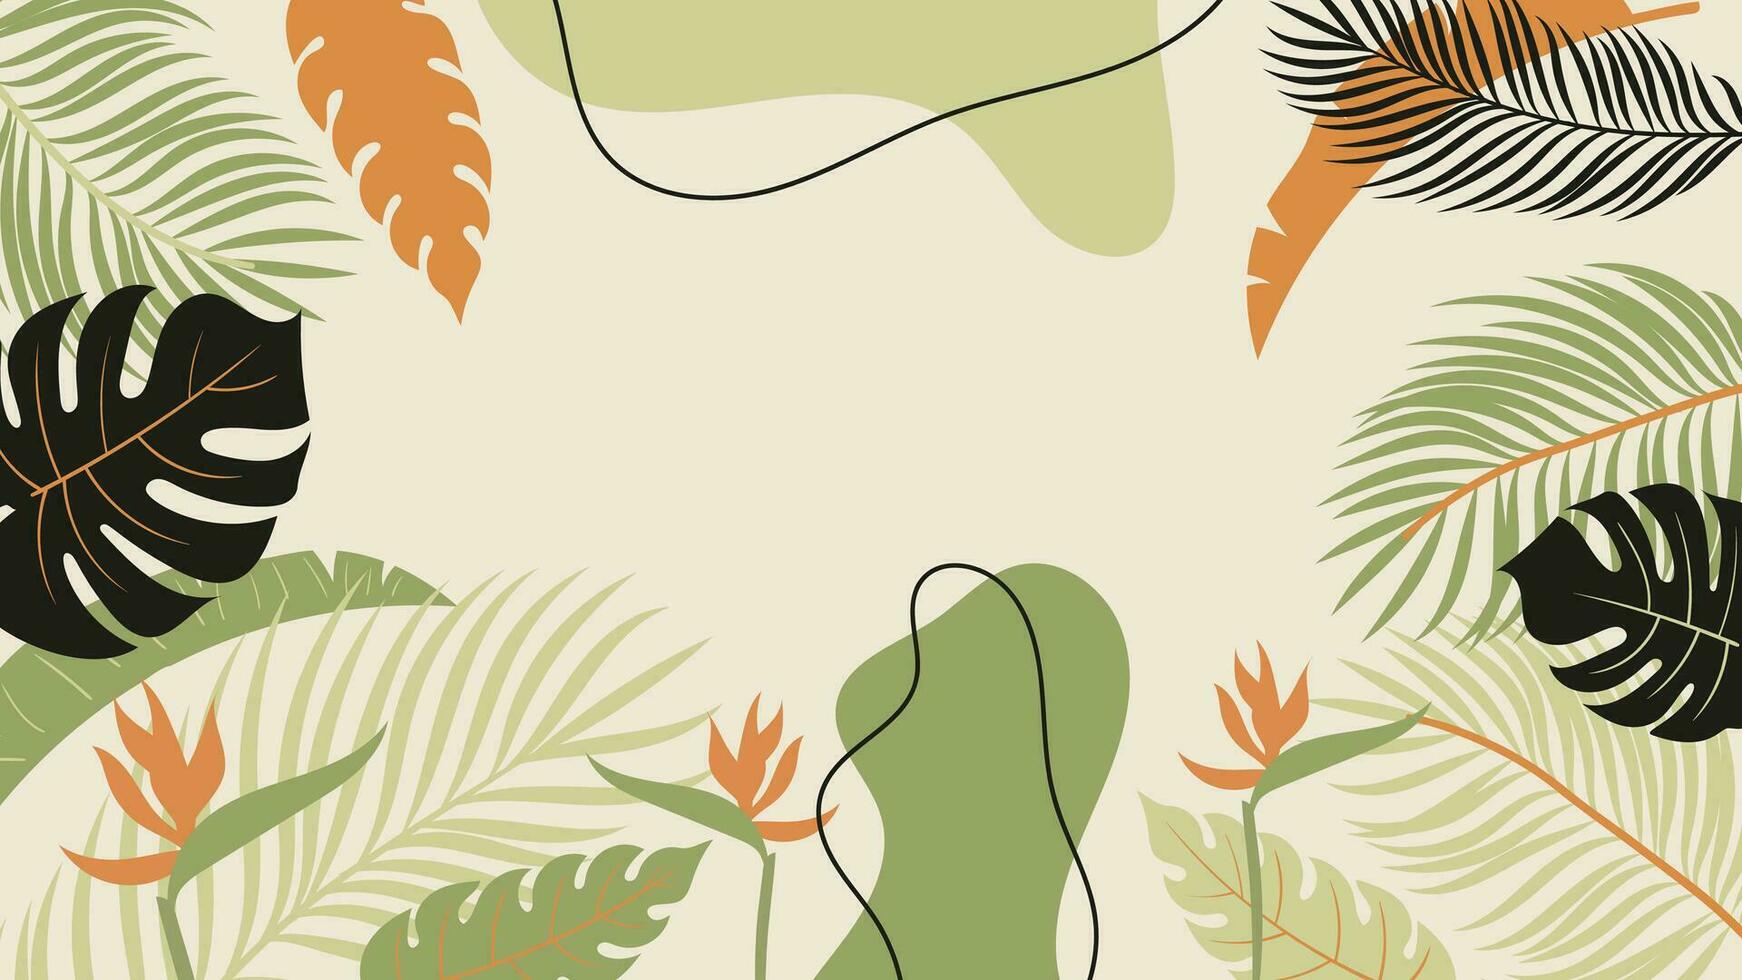 Wald tropisch Hintergrund Vektor Illustration. Urwald Pflanzen, Monstera, Palme Blätter, Banane Blatt, exotisch Sommer Stil. botanisch Hintergrund Design zum Dekoration, Hintergrund, Produkt Präsentation.